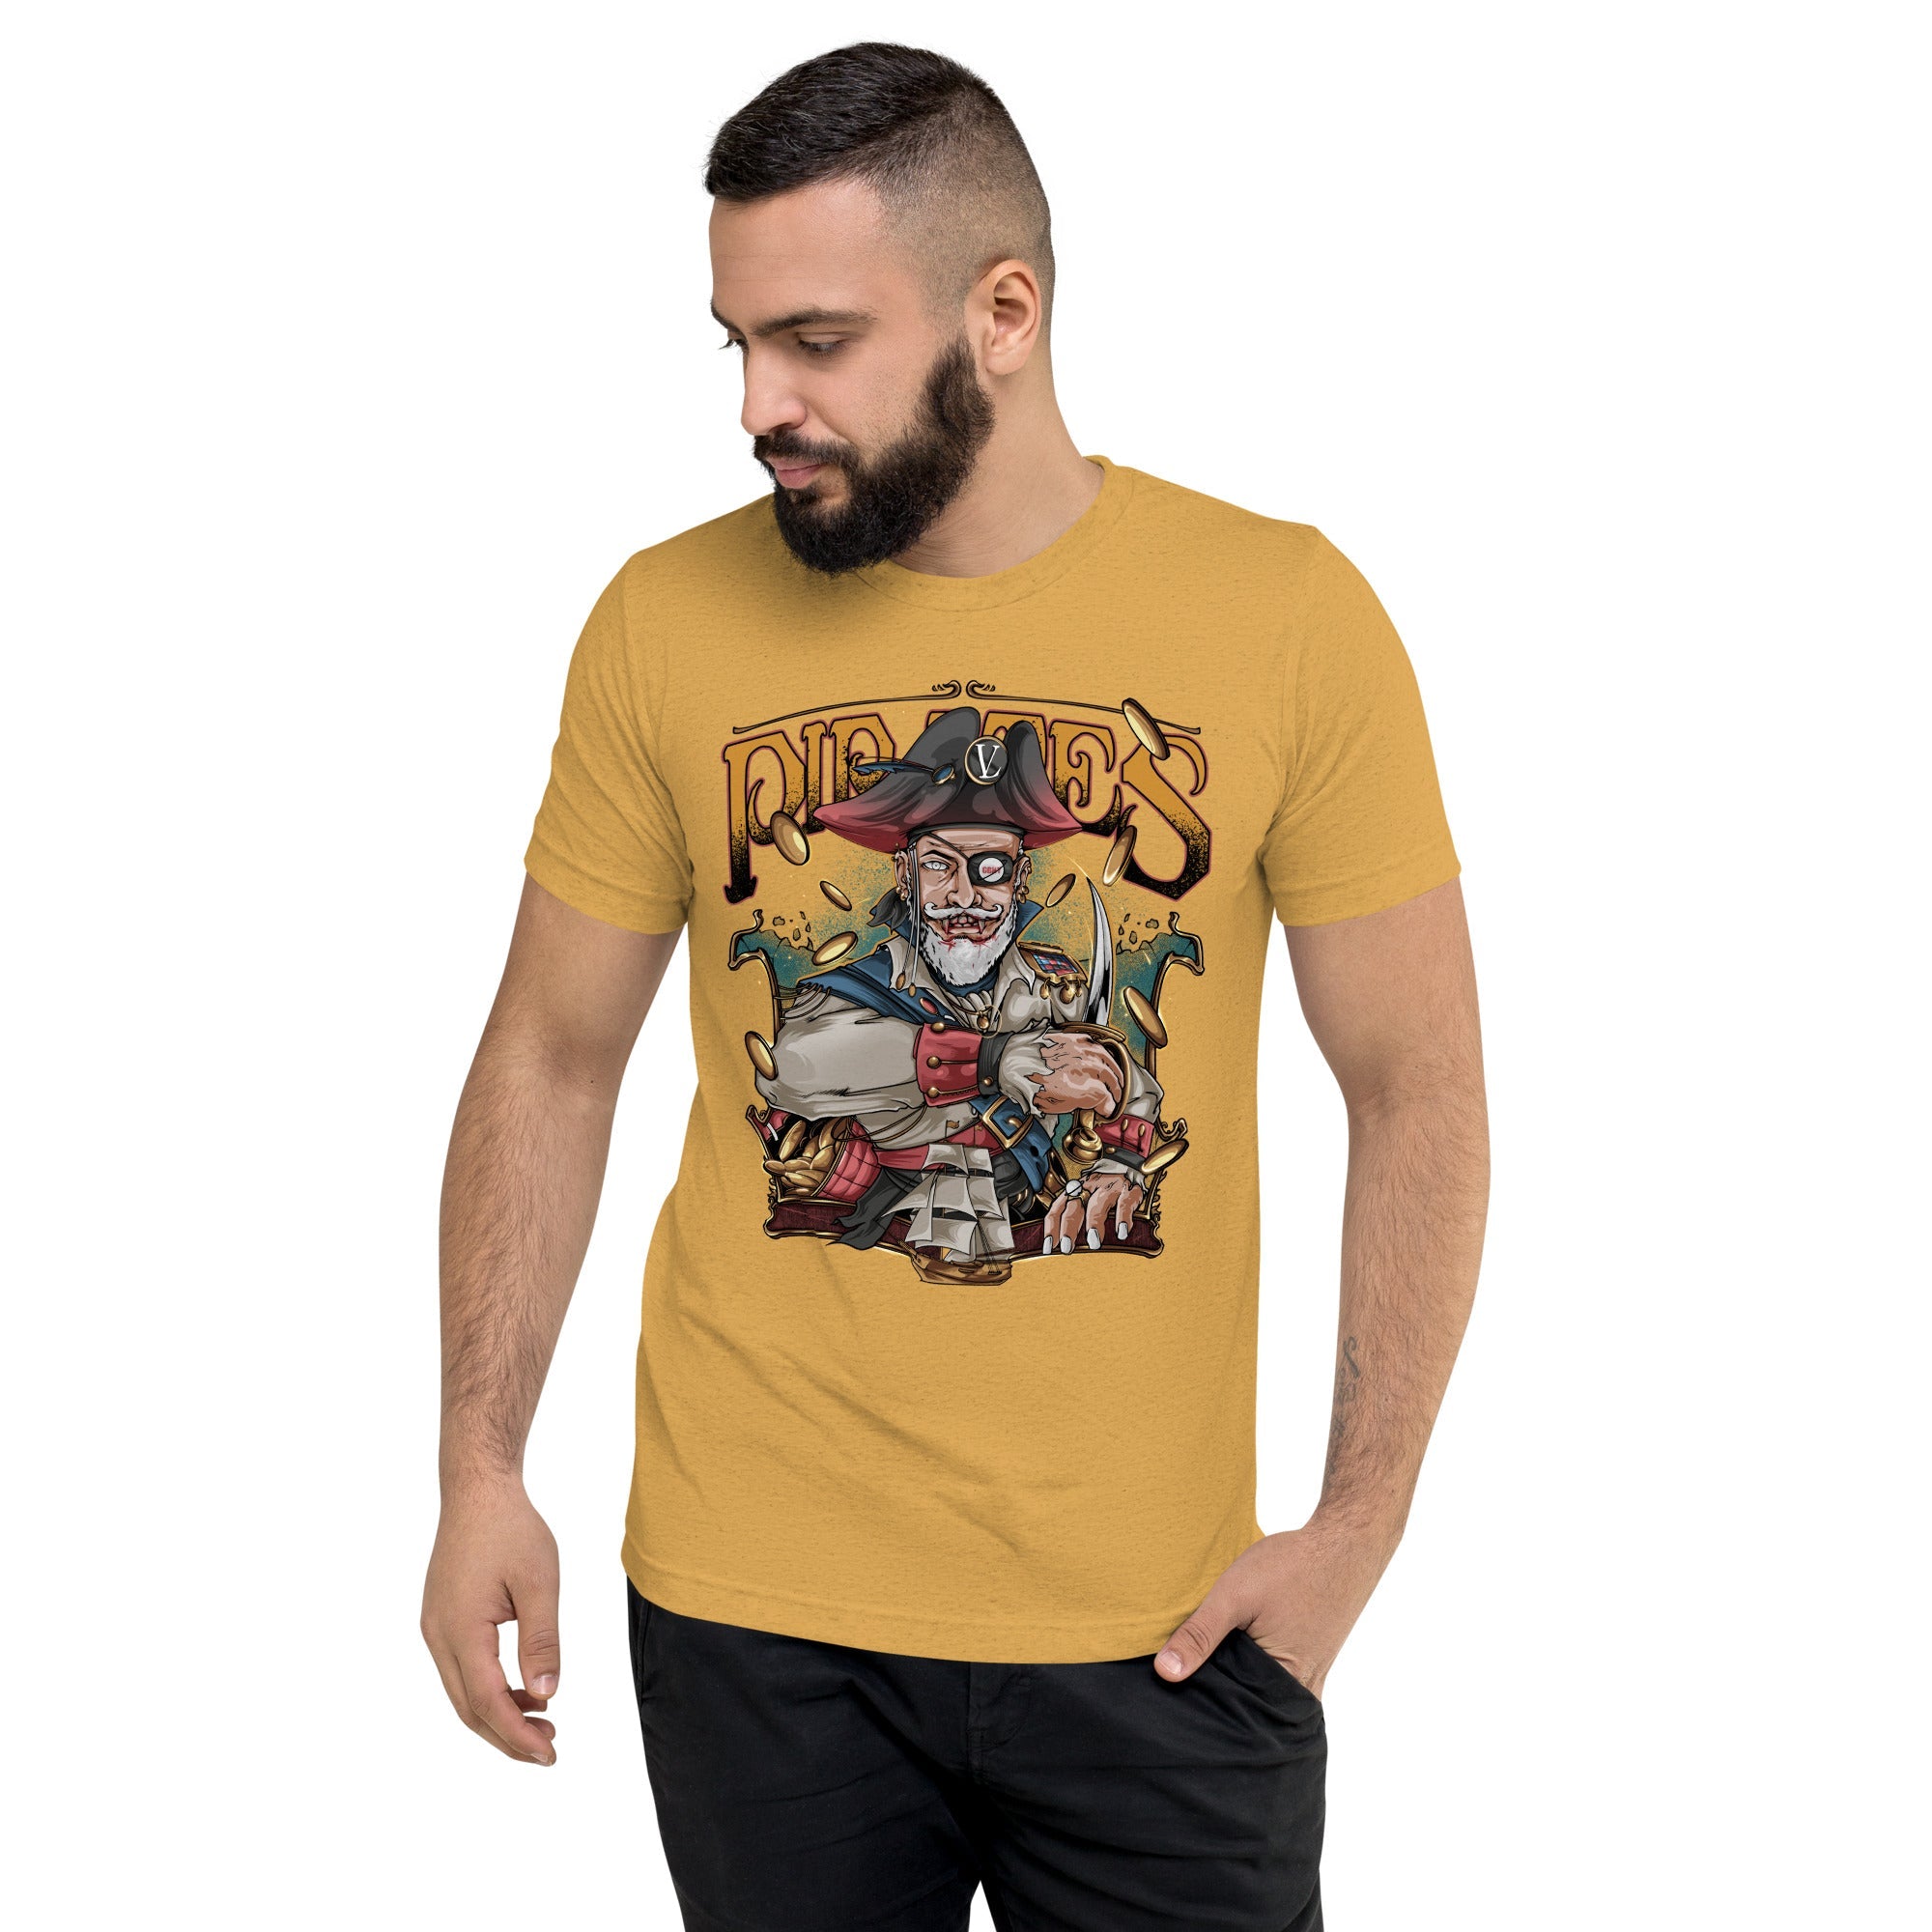 GBNY Mustard Triblend / XS Vamp Life X GBNY "Pirates King" T-shirt - Men's 4461701_16728